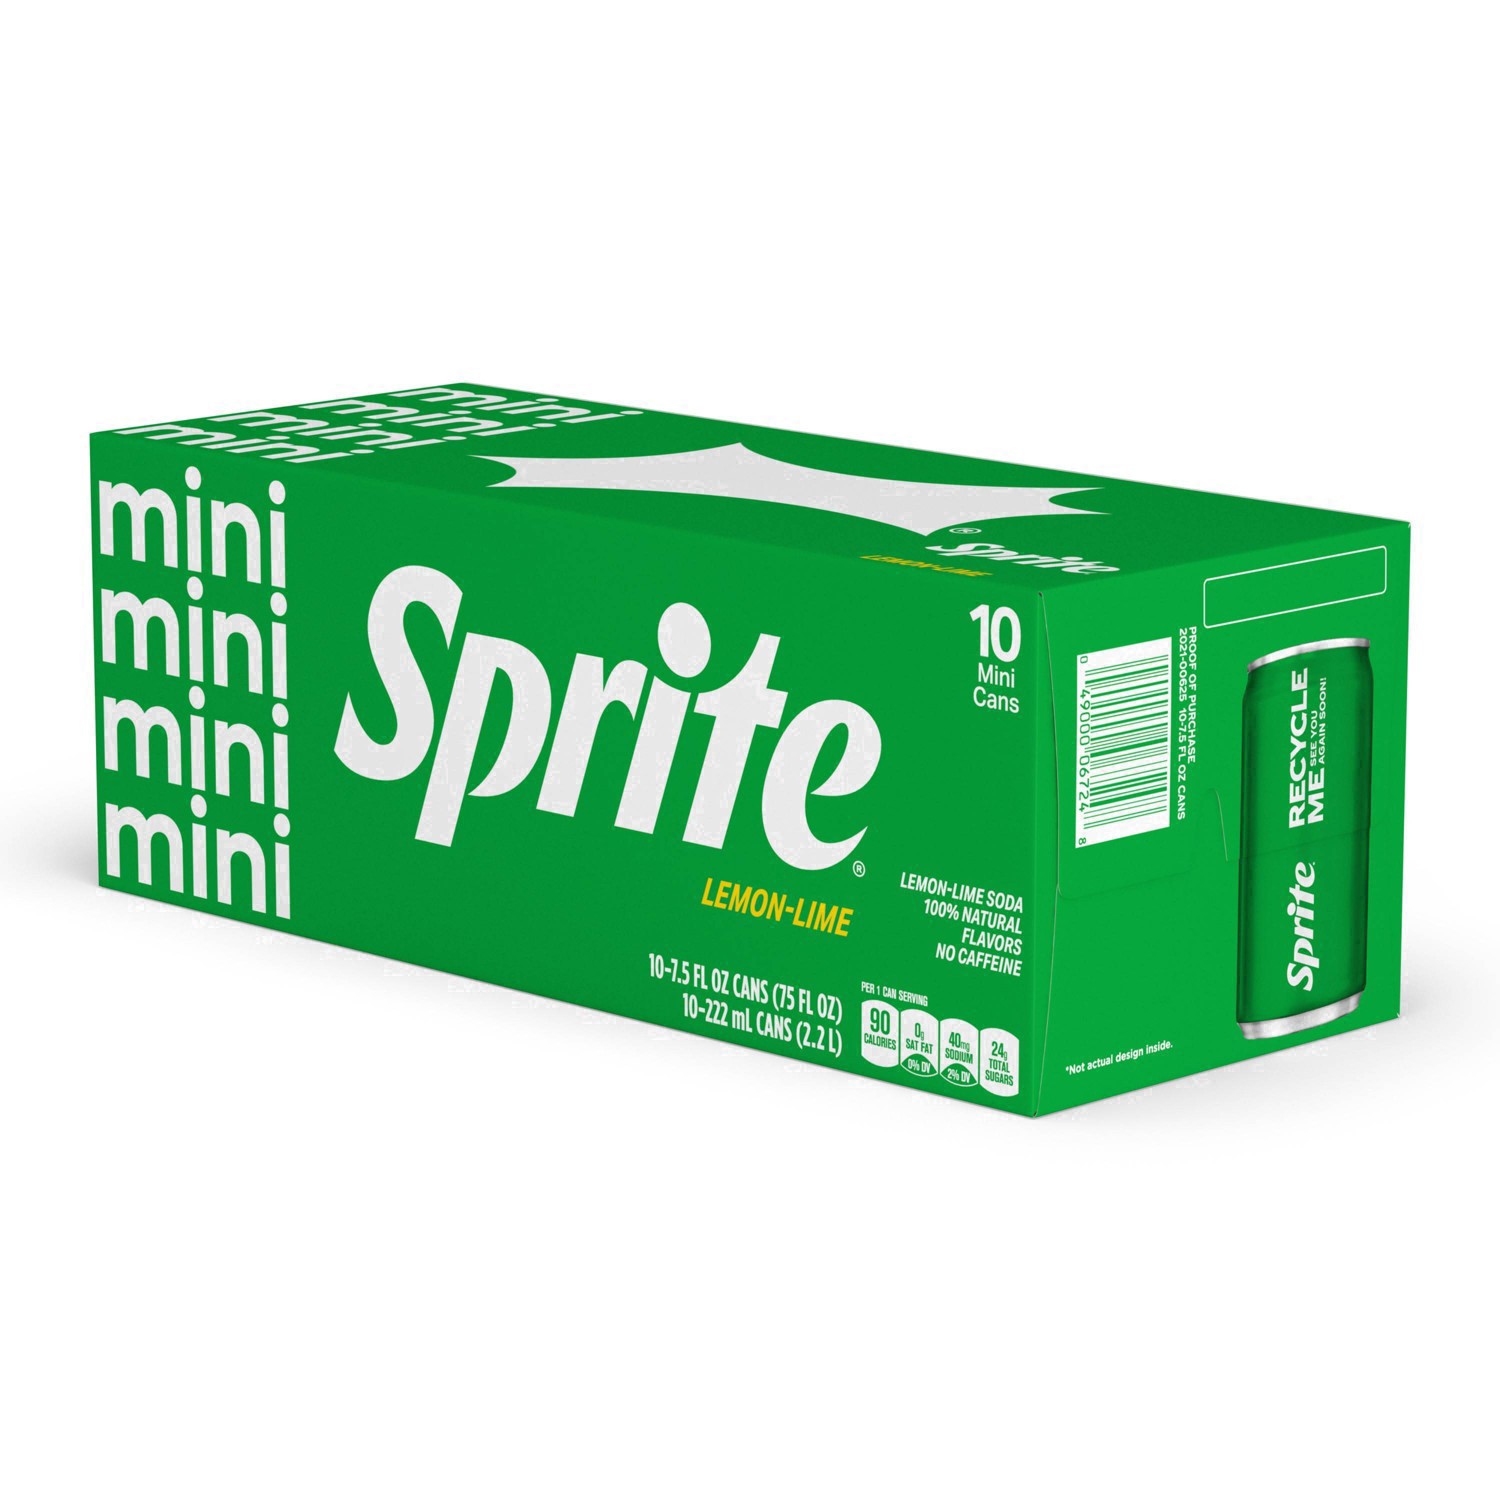 slide 69 of 91, Sprite Lemon Lime Soda Soft Drinks, 7.5 fl oz, 10 Pack, 